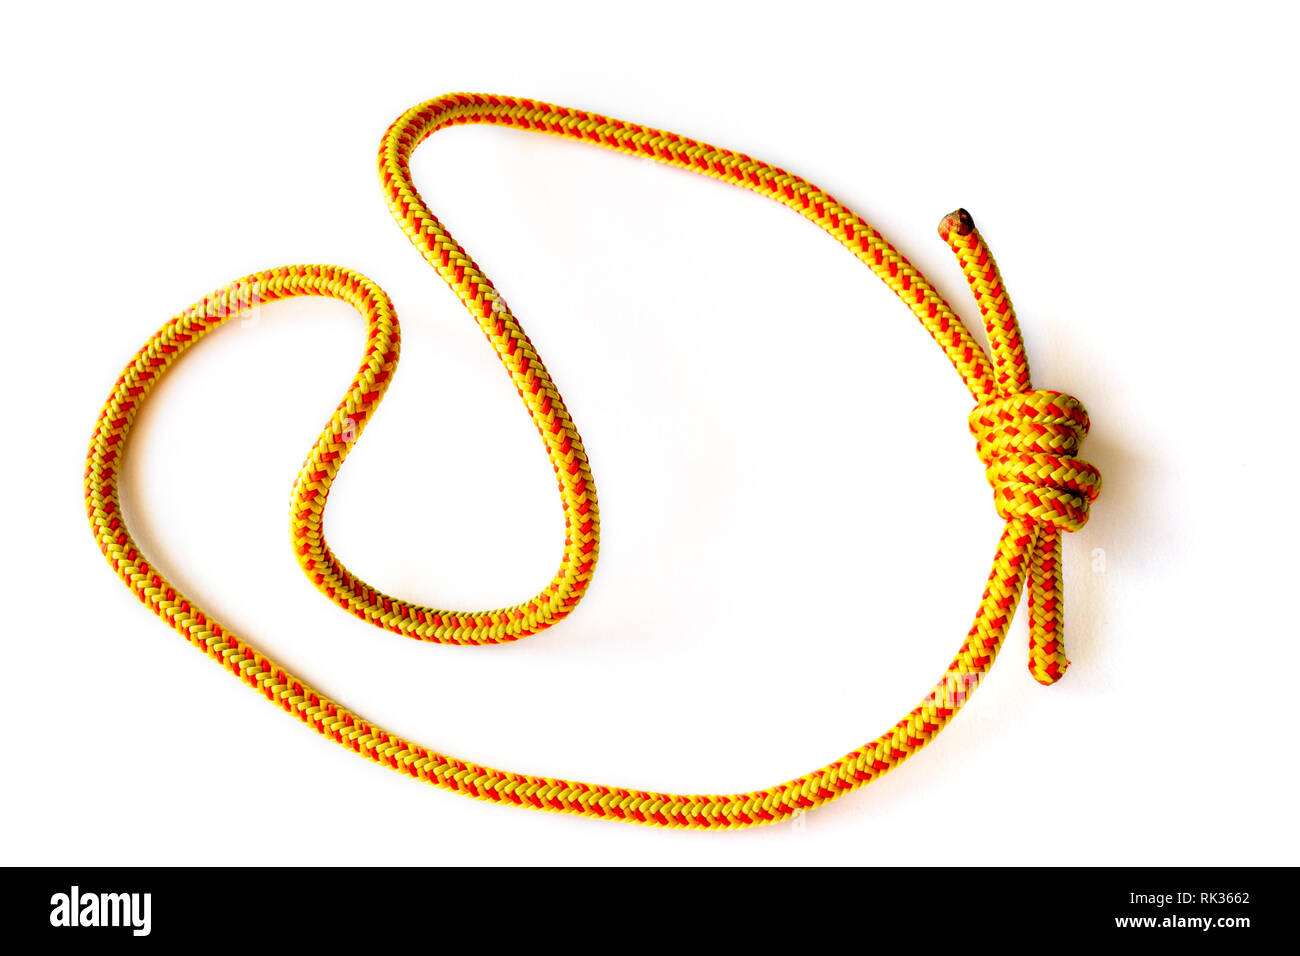 Une boucle prusik (cordon) sur 5mm corde, fermé avec un double nœud de pêcheur. Cette boucle est utilisée dans l'escalade, le canyoning, l'alpinisme, la spéléologie, corde rescu Banque D'Images